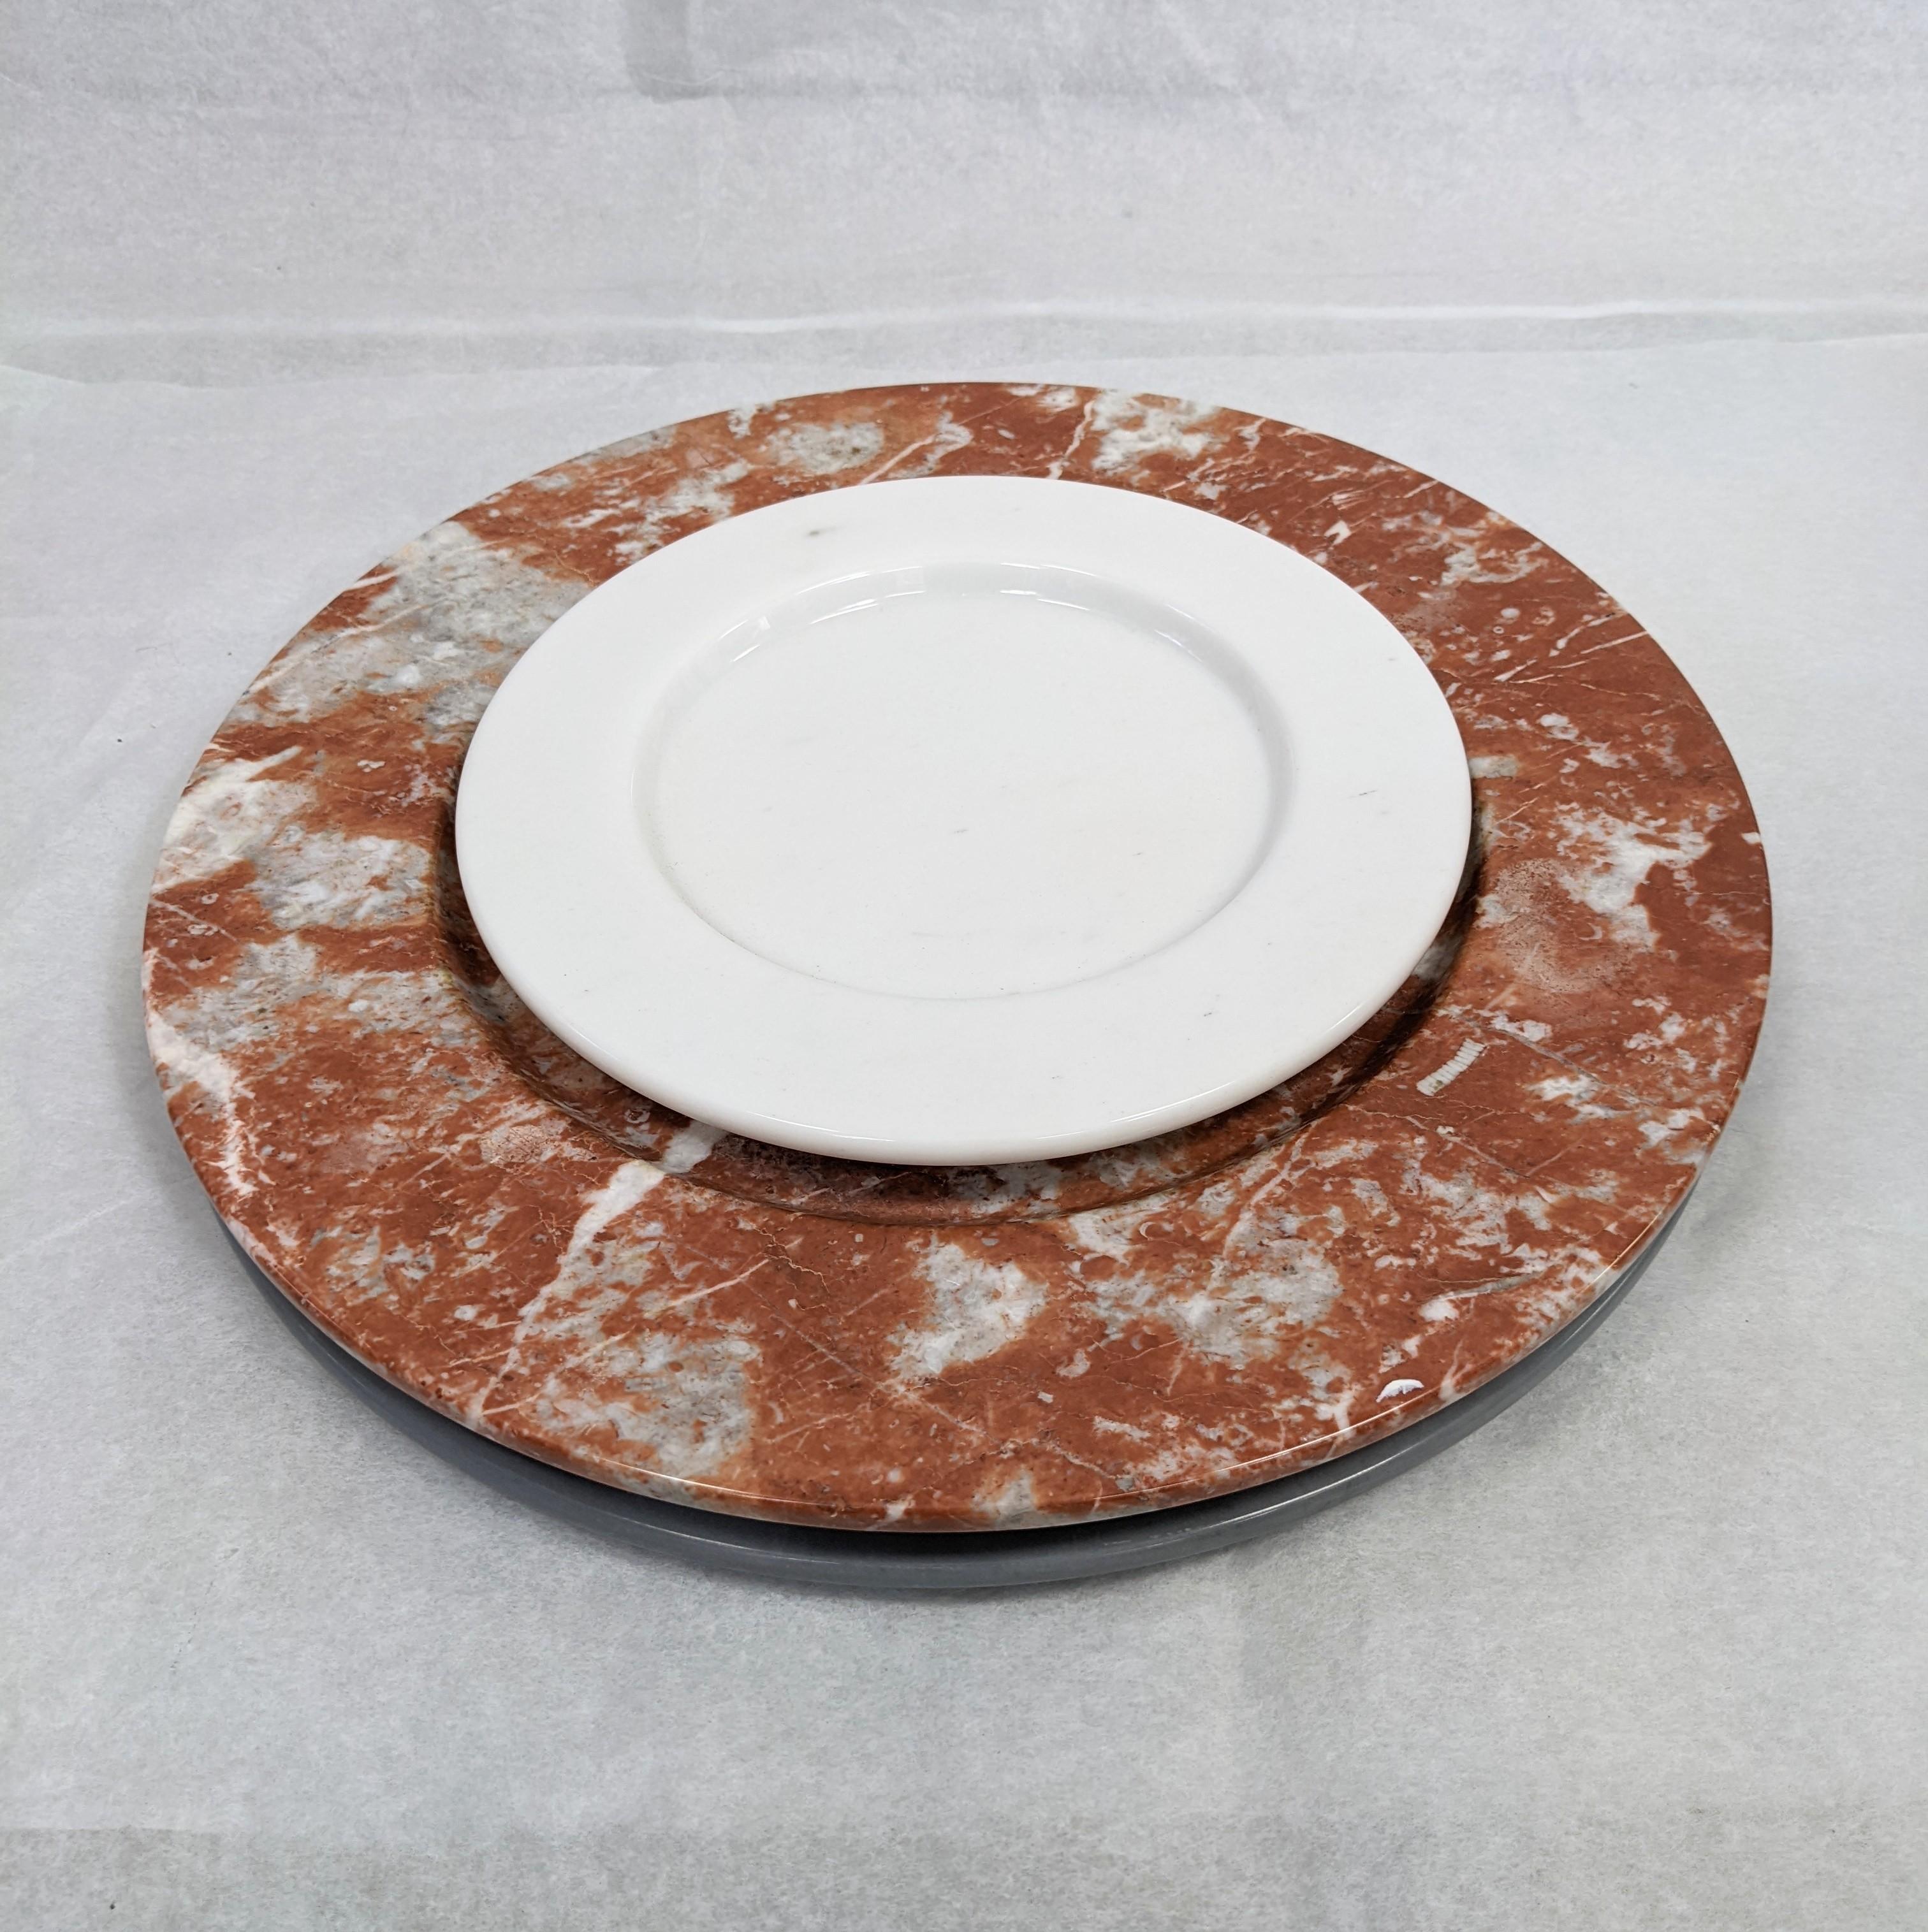 Ensemble de 3 assiettes de présentation décoratives en marbre des années 1980 en Italie, en rouge, gris et blanc chiné. Les grands centres de table font 13 pouces de diamètre et les plus petits 7 pouces. 
Années 1980 Fait à la main en Italie.